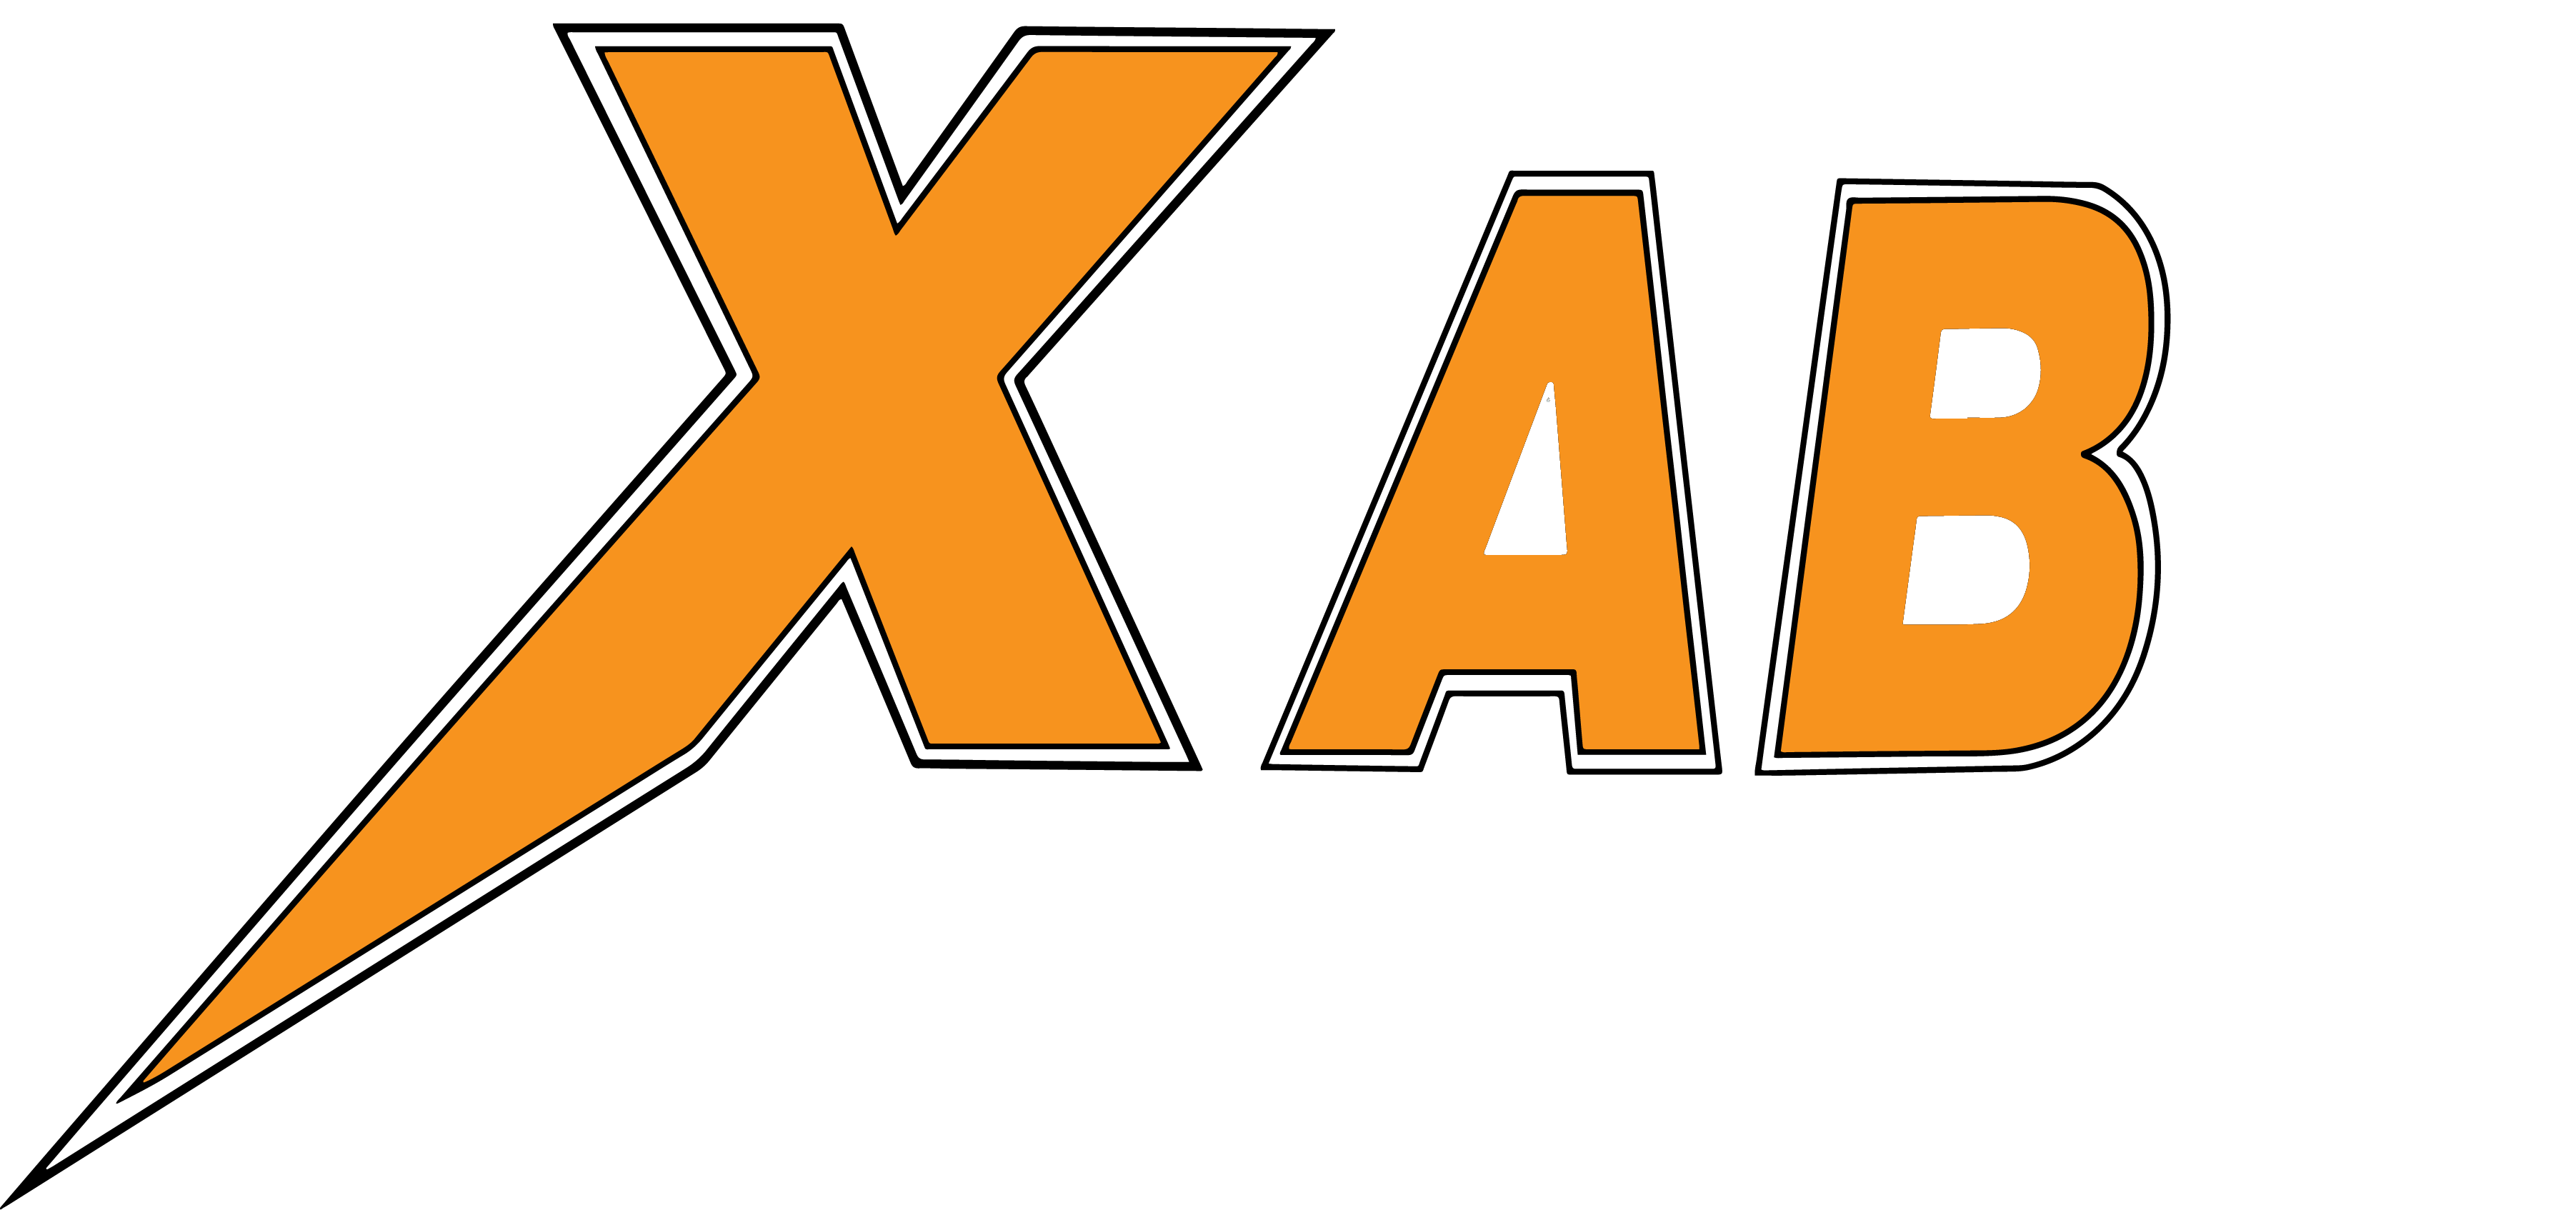 X i Sverige